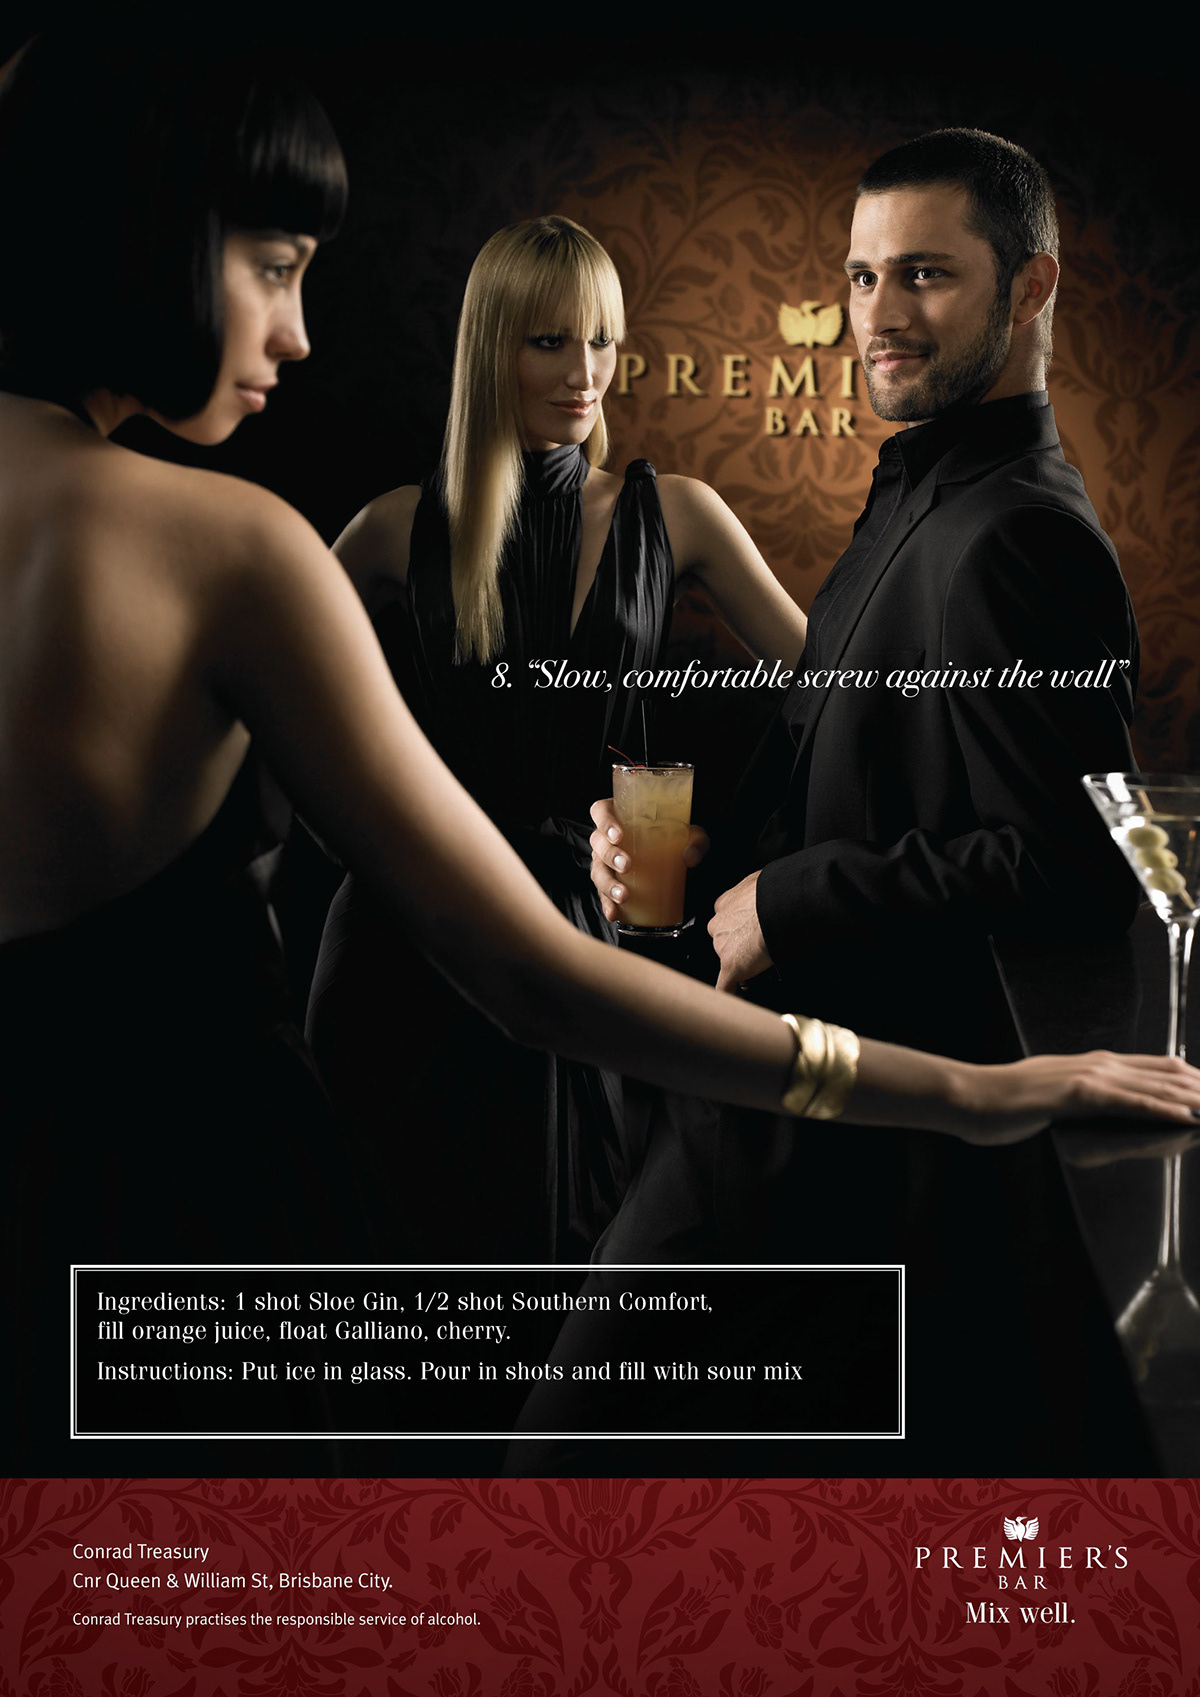 Erik williamson casino treasury images cocktails models copy Brisbane Australia